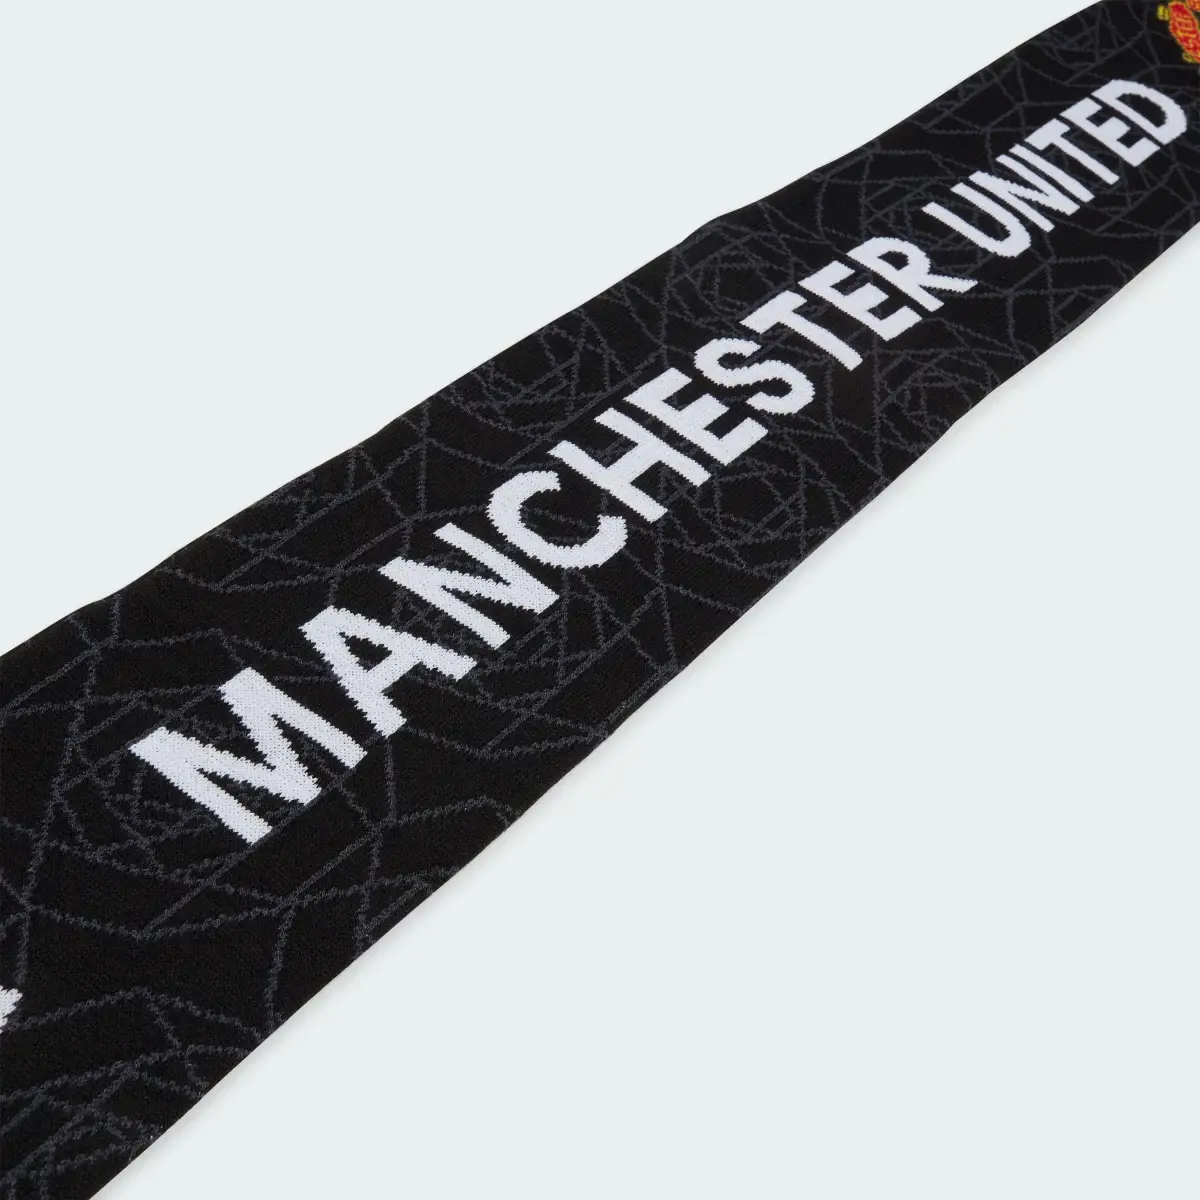 Adidas Cachecol com as Cores Principais do Manchester United. 3